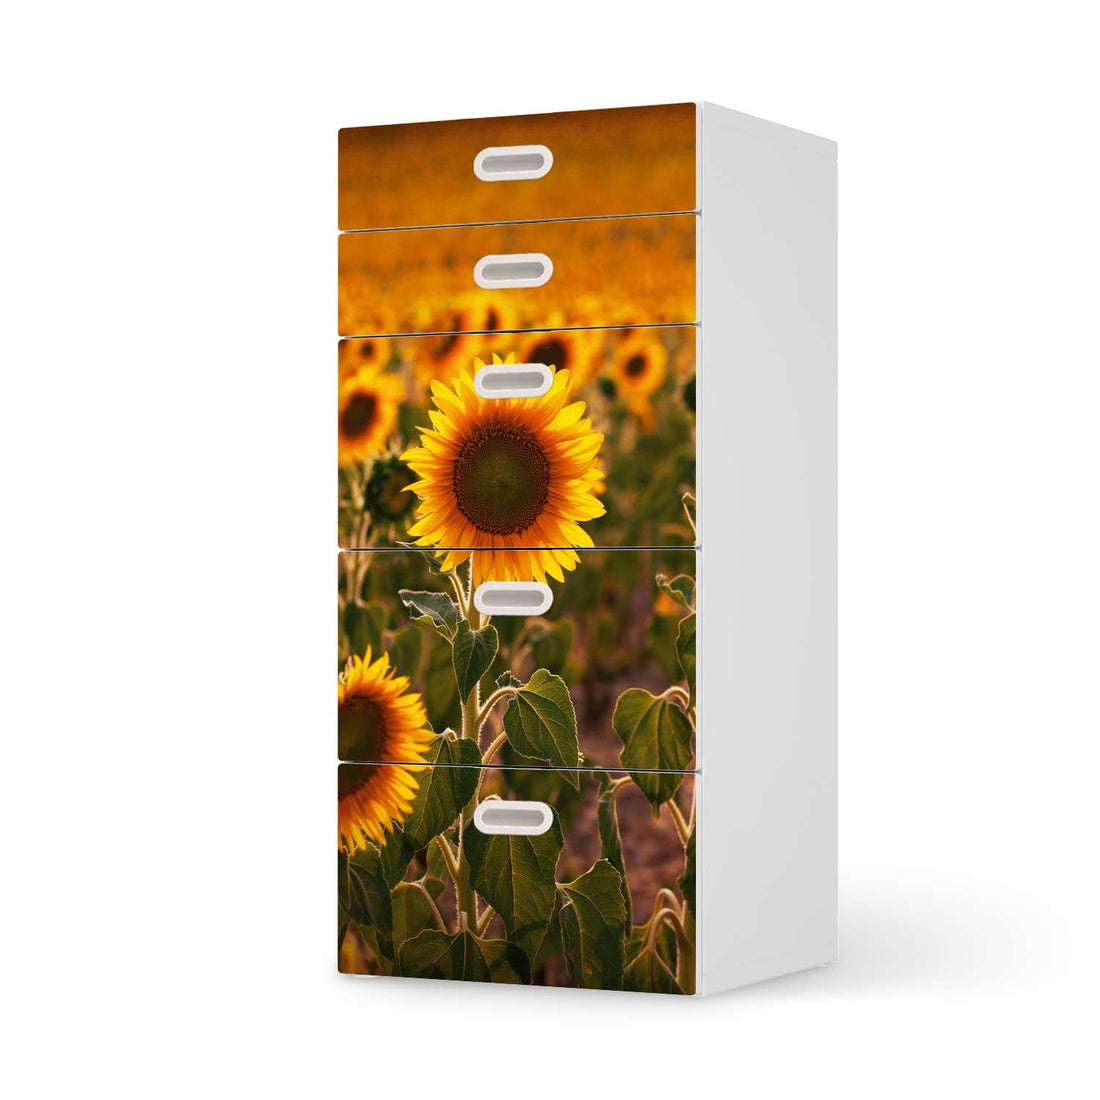 Möbel Klebefolie Sunflowers - IKEA Stuva / Fritids Kommode - 5 Schubladen  - weiss